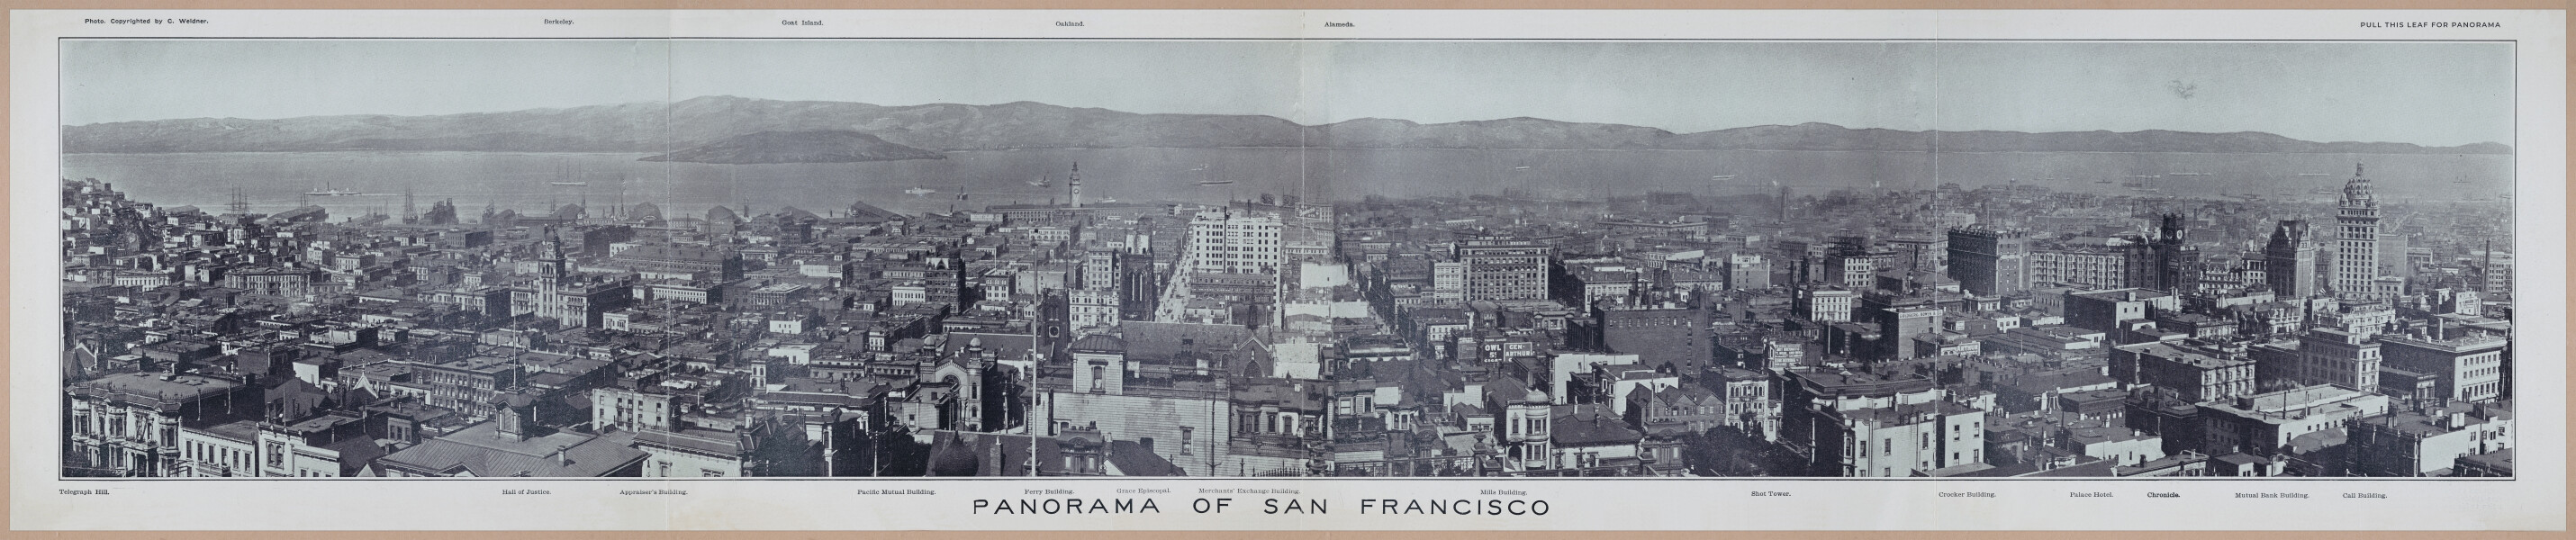 E257 - San Francisco and California - 1906 - i2946-2947-2948-2949